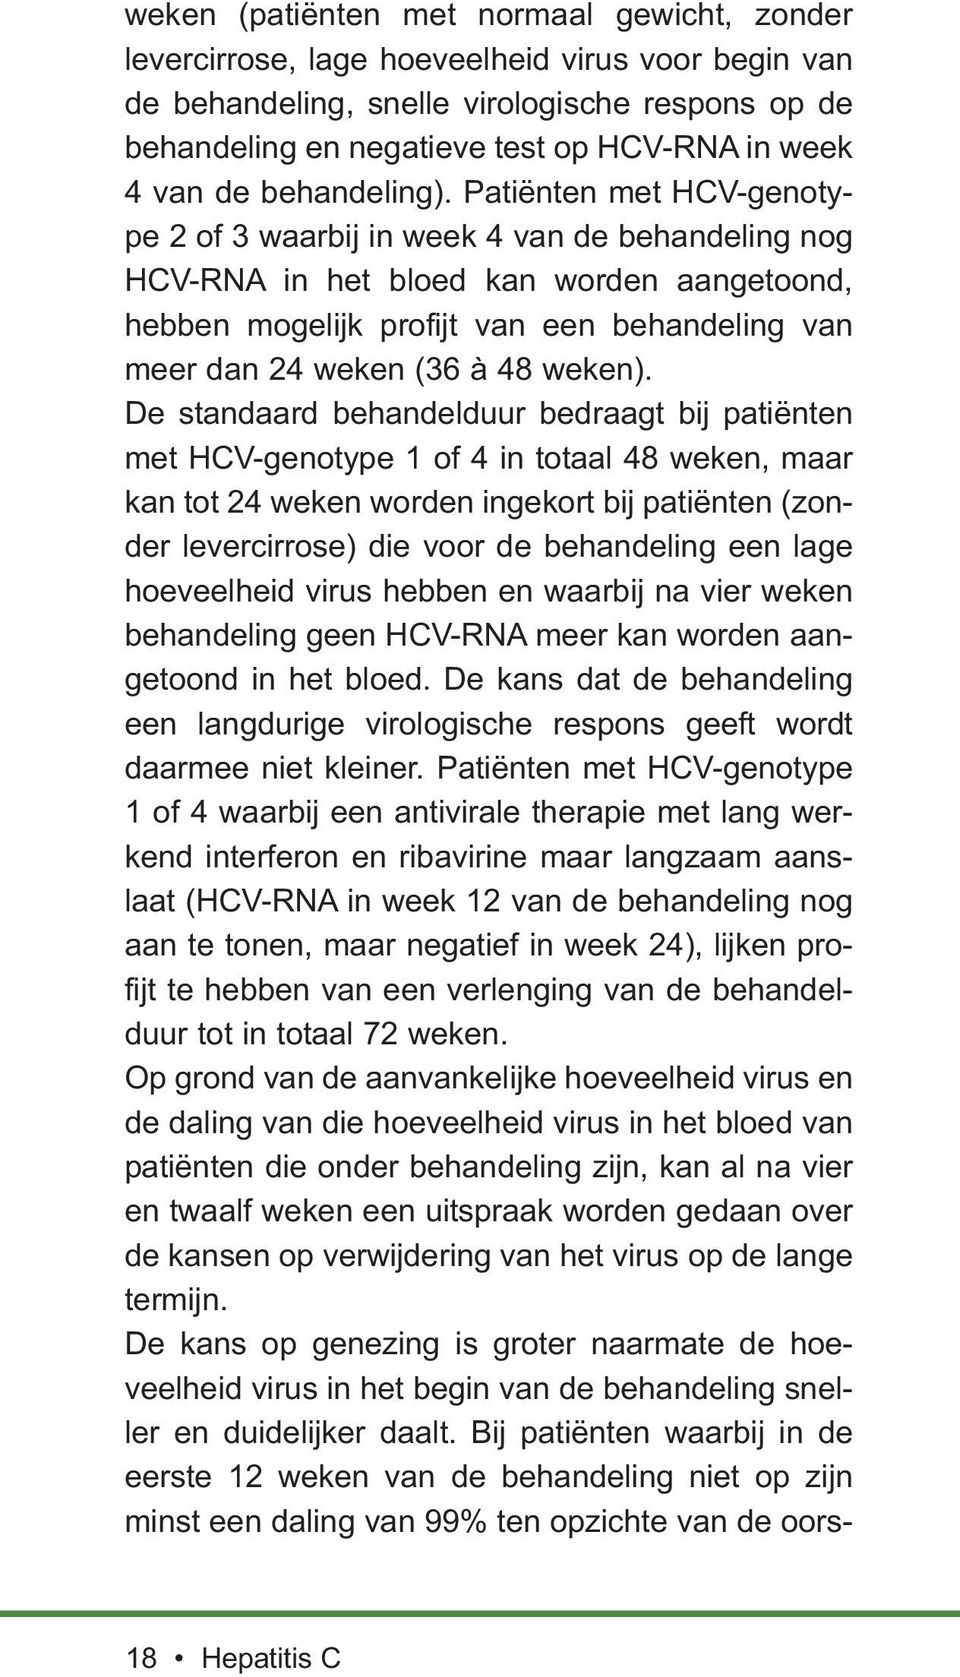 Patiënten met HCV-genotype 2 of 3 waarbij in week 4 van de behandeling nog HCV-RNA in het bloed kan worden aangetoond, hebben mogelijk profijt van een behandeling van meer dan 24 weken (36 à 48